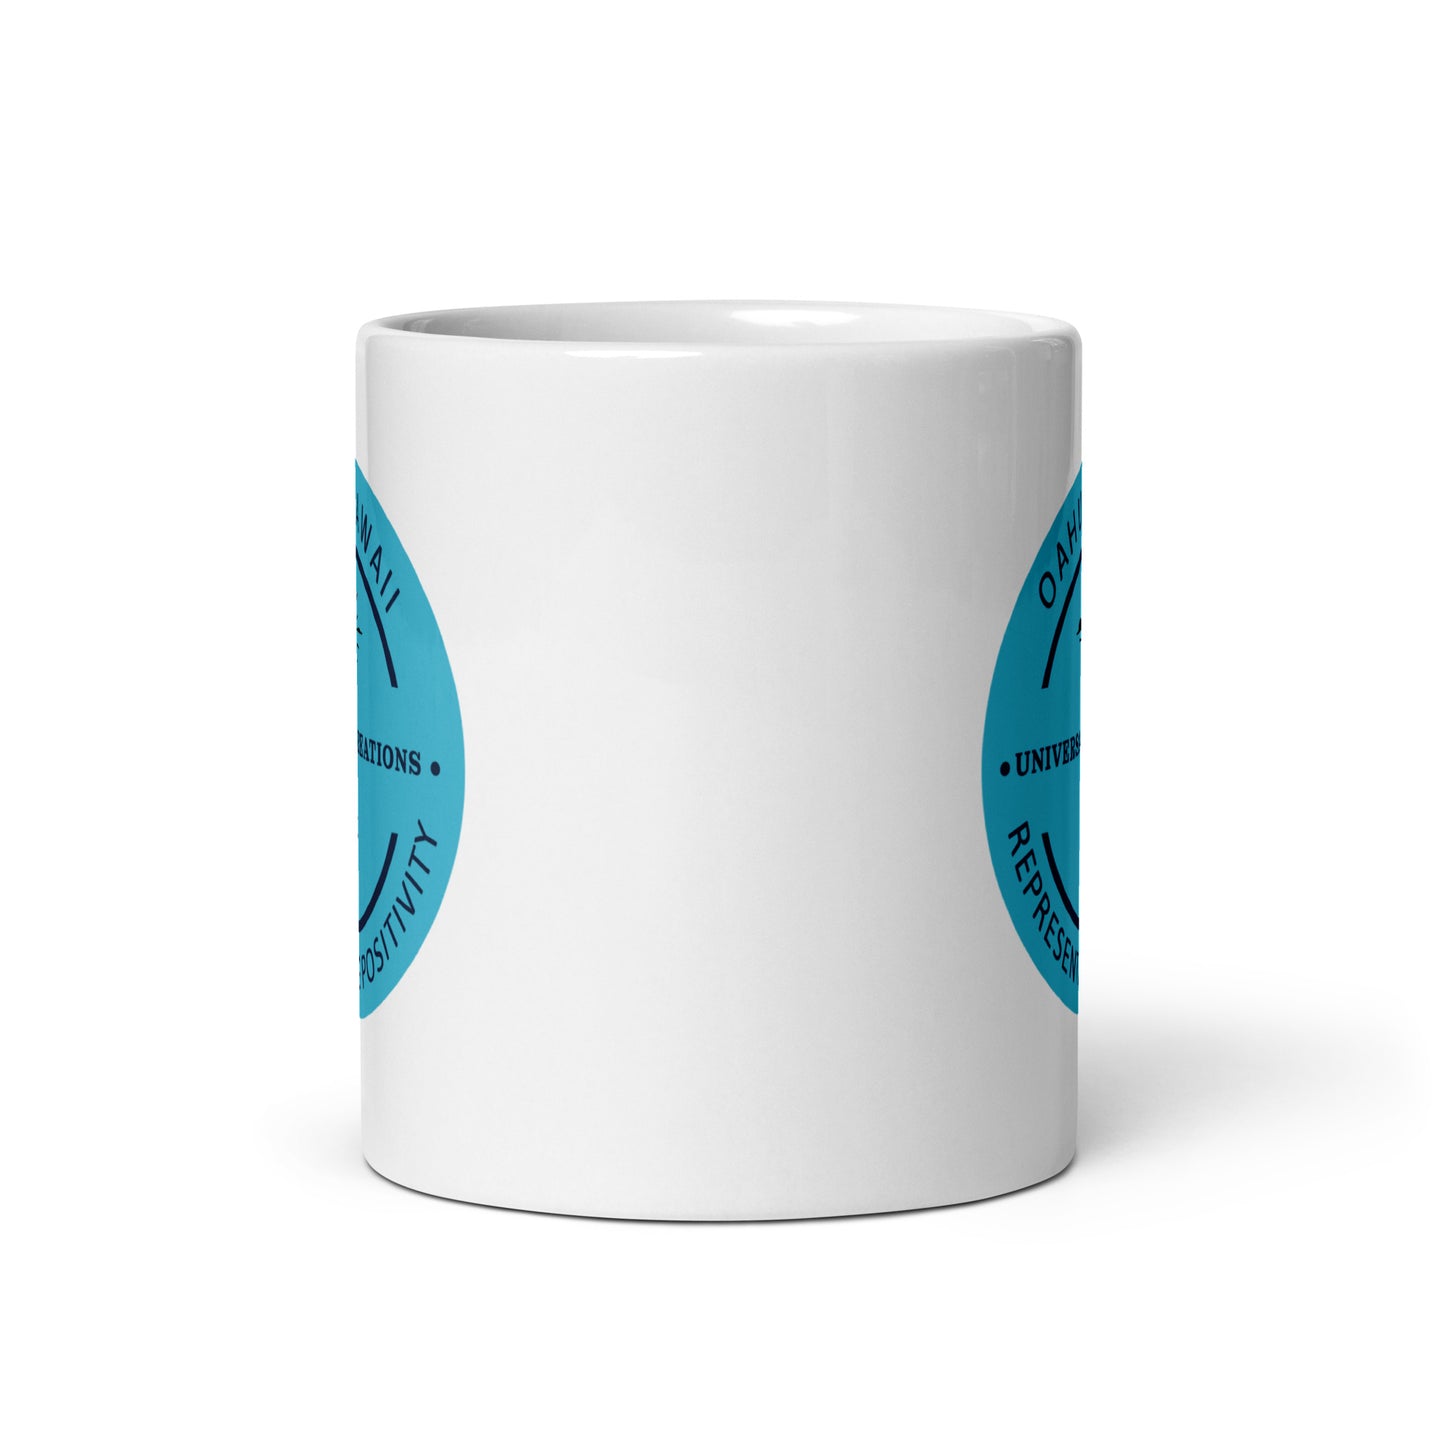 U.C Logo - White glossy mug